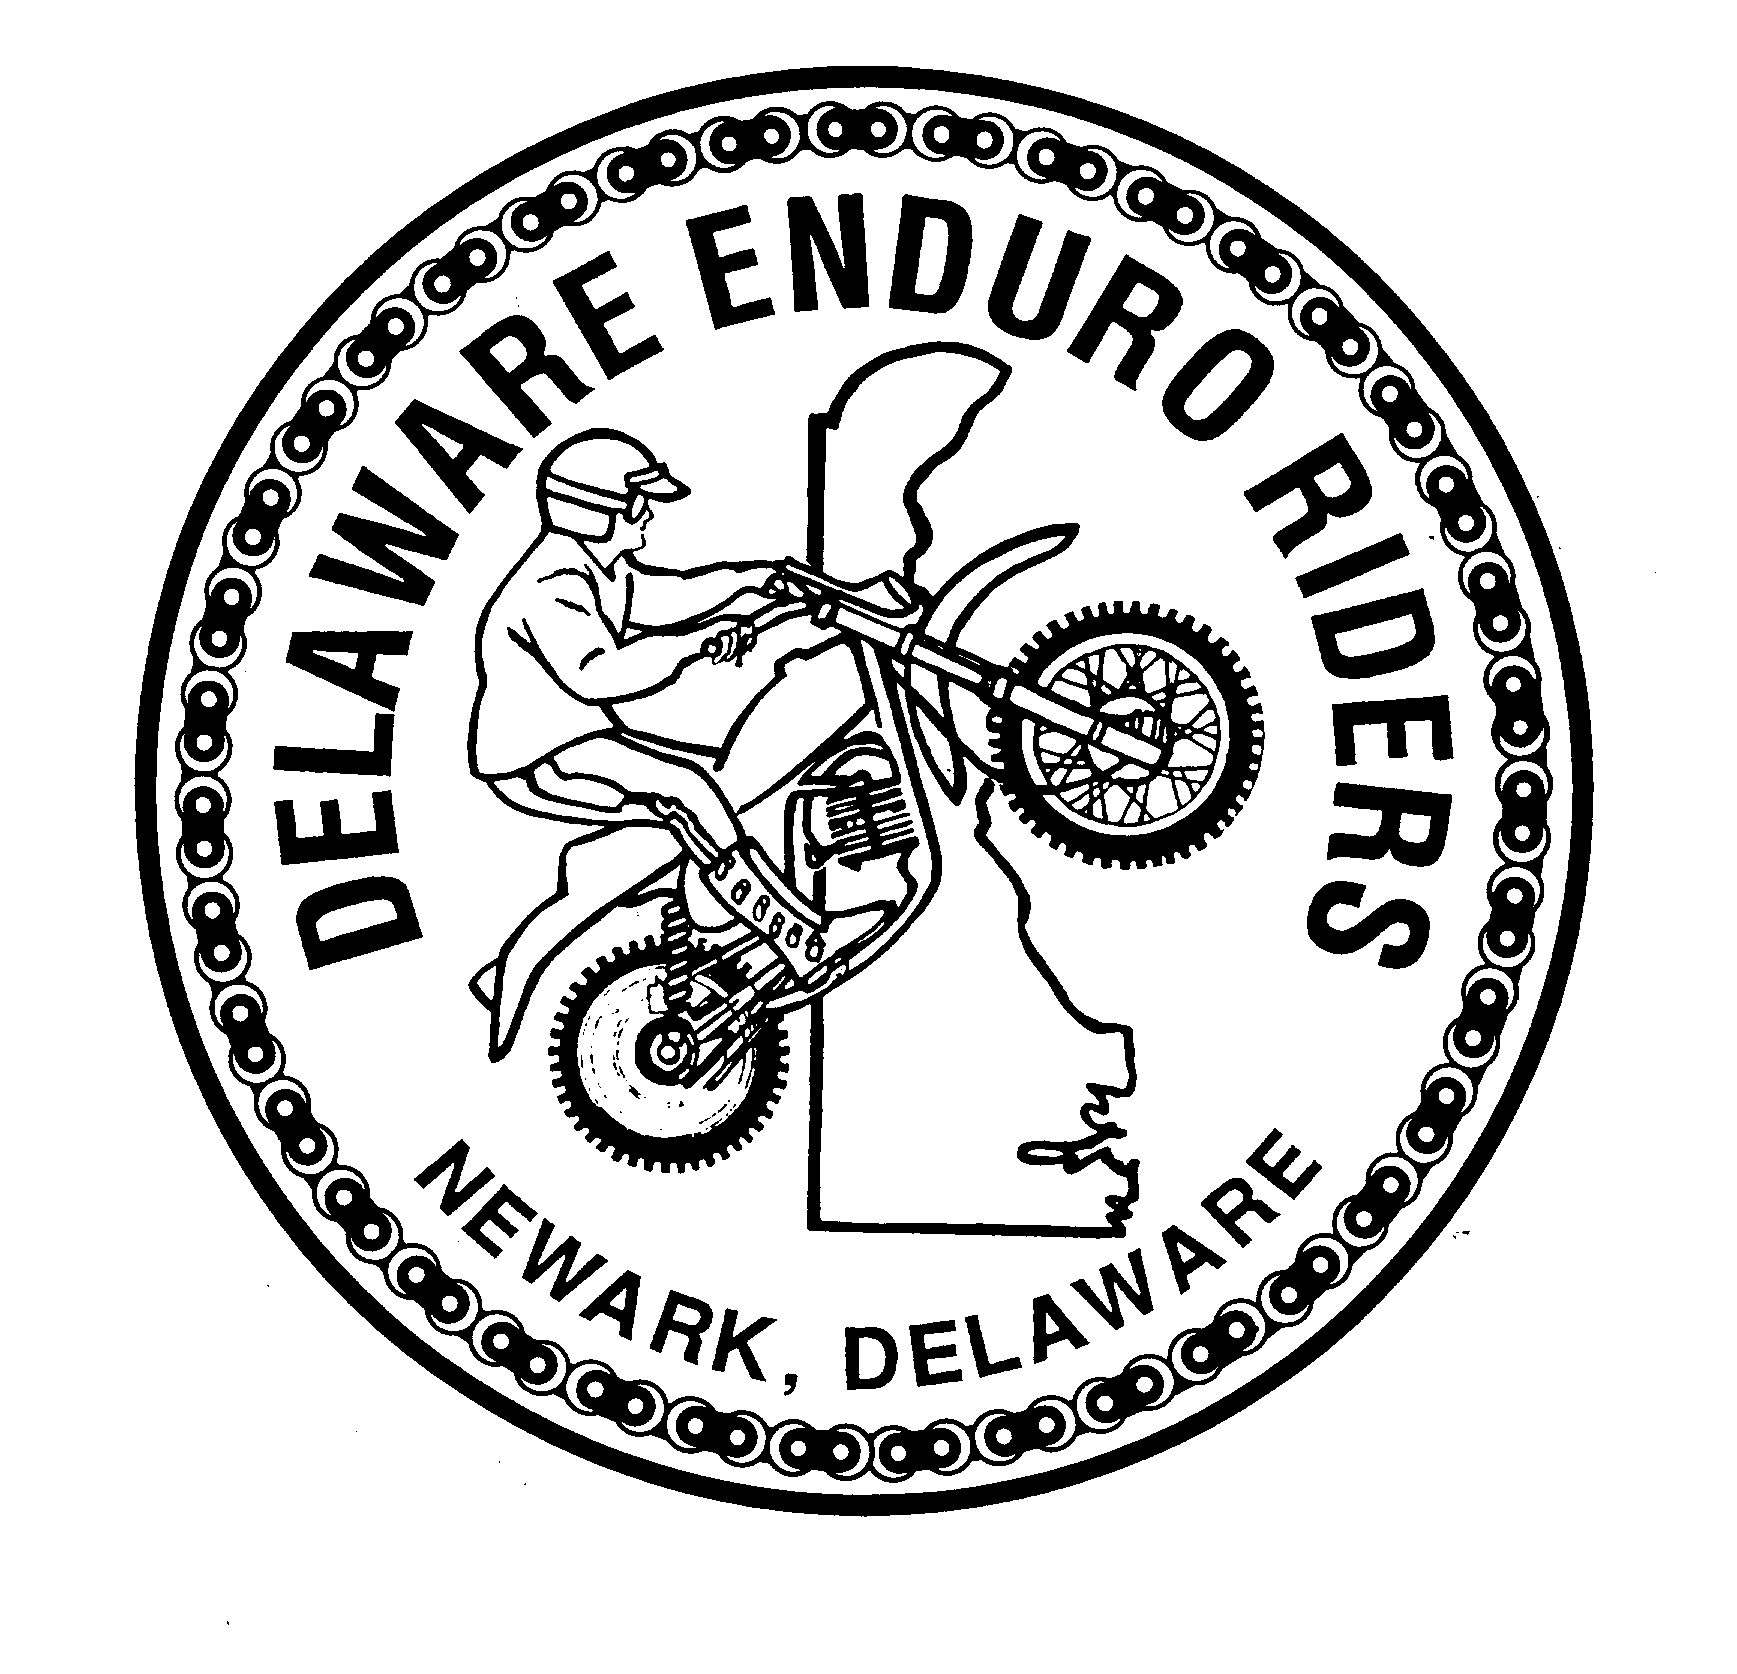 Delaware Enduro Riders